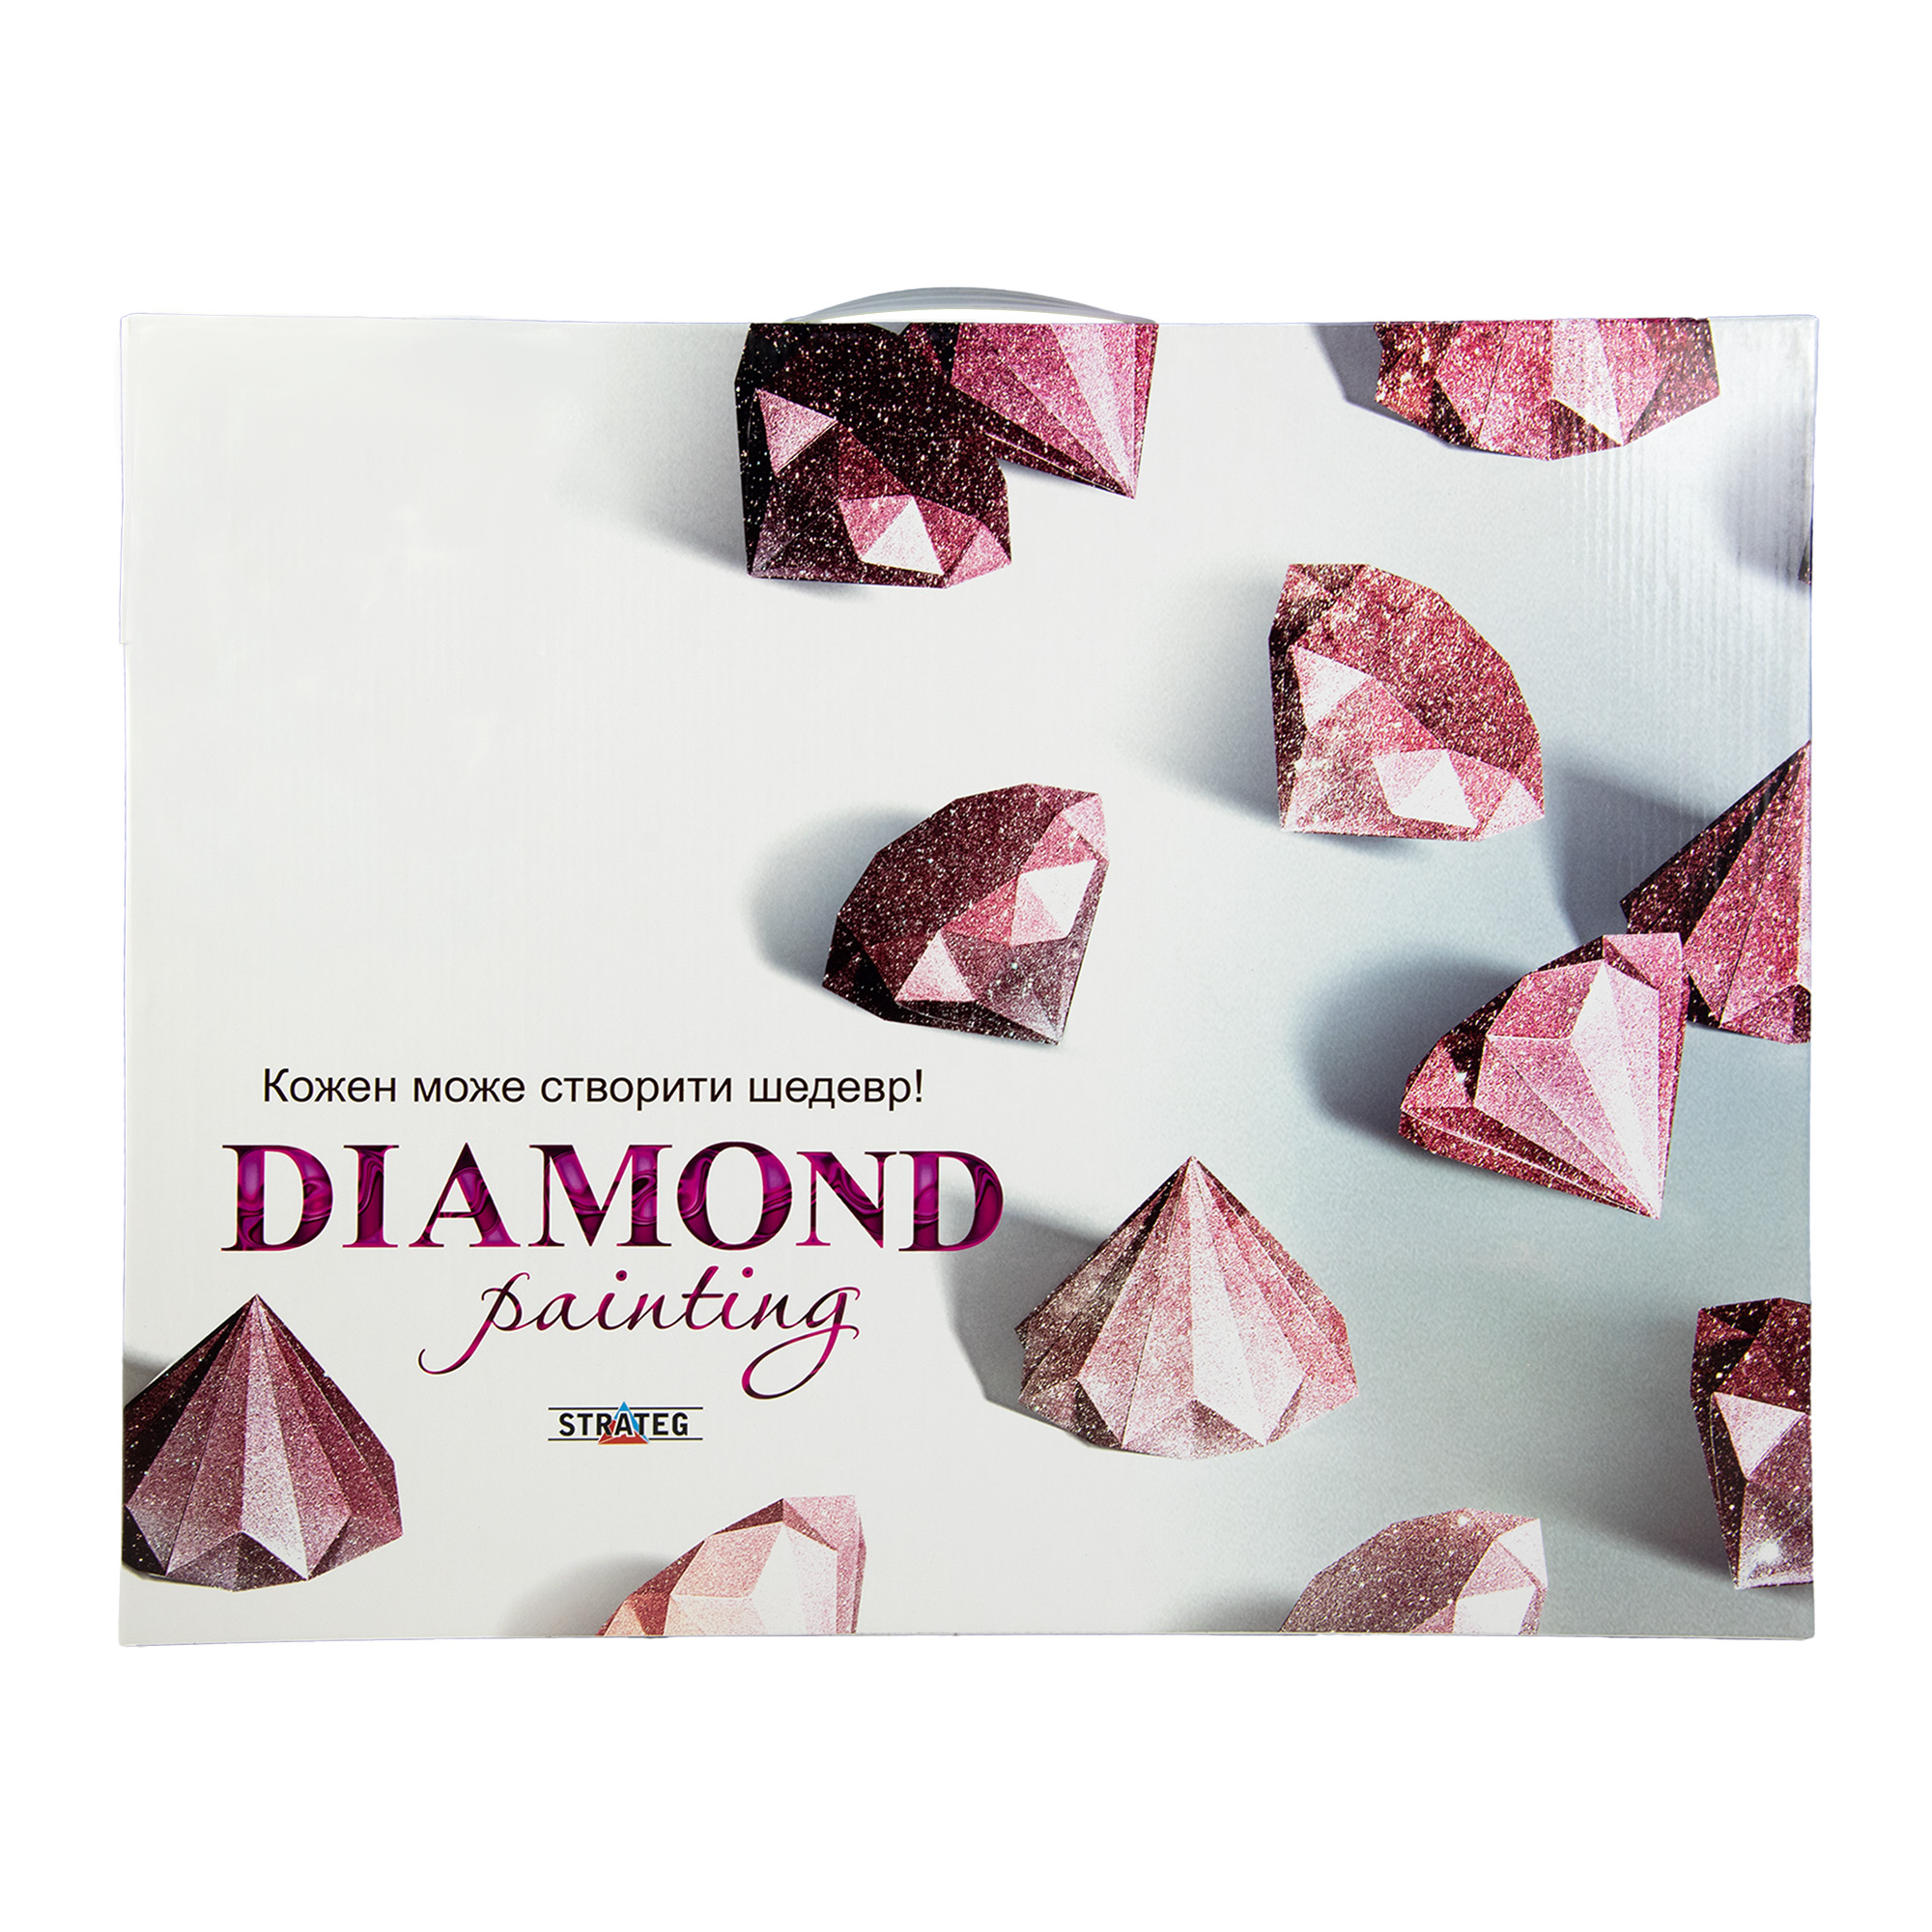 Diamantmosaik Strateg PREMIUM Picknick mit Wein Größe 40x50 cm (SK70418)